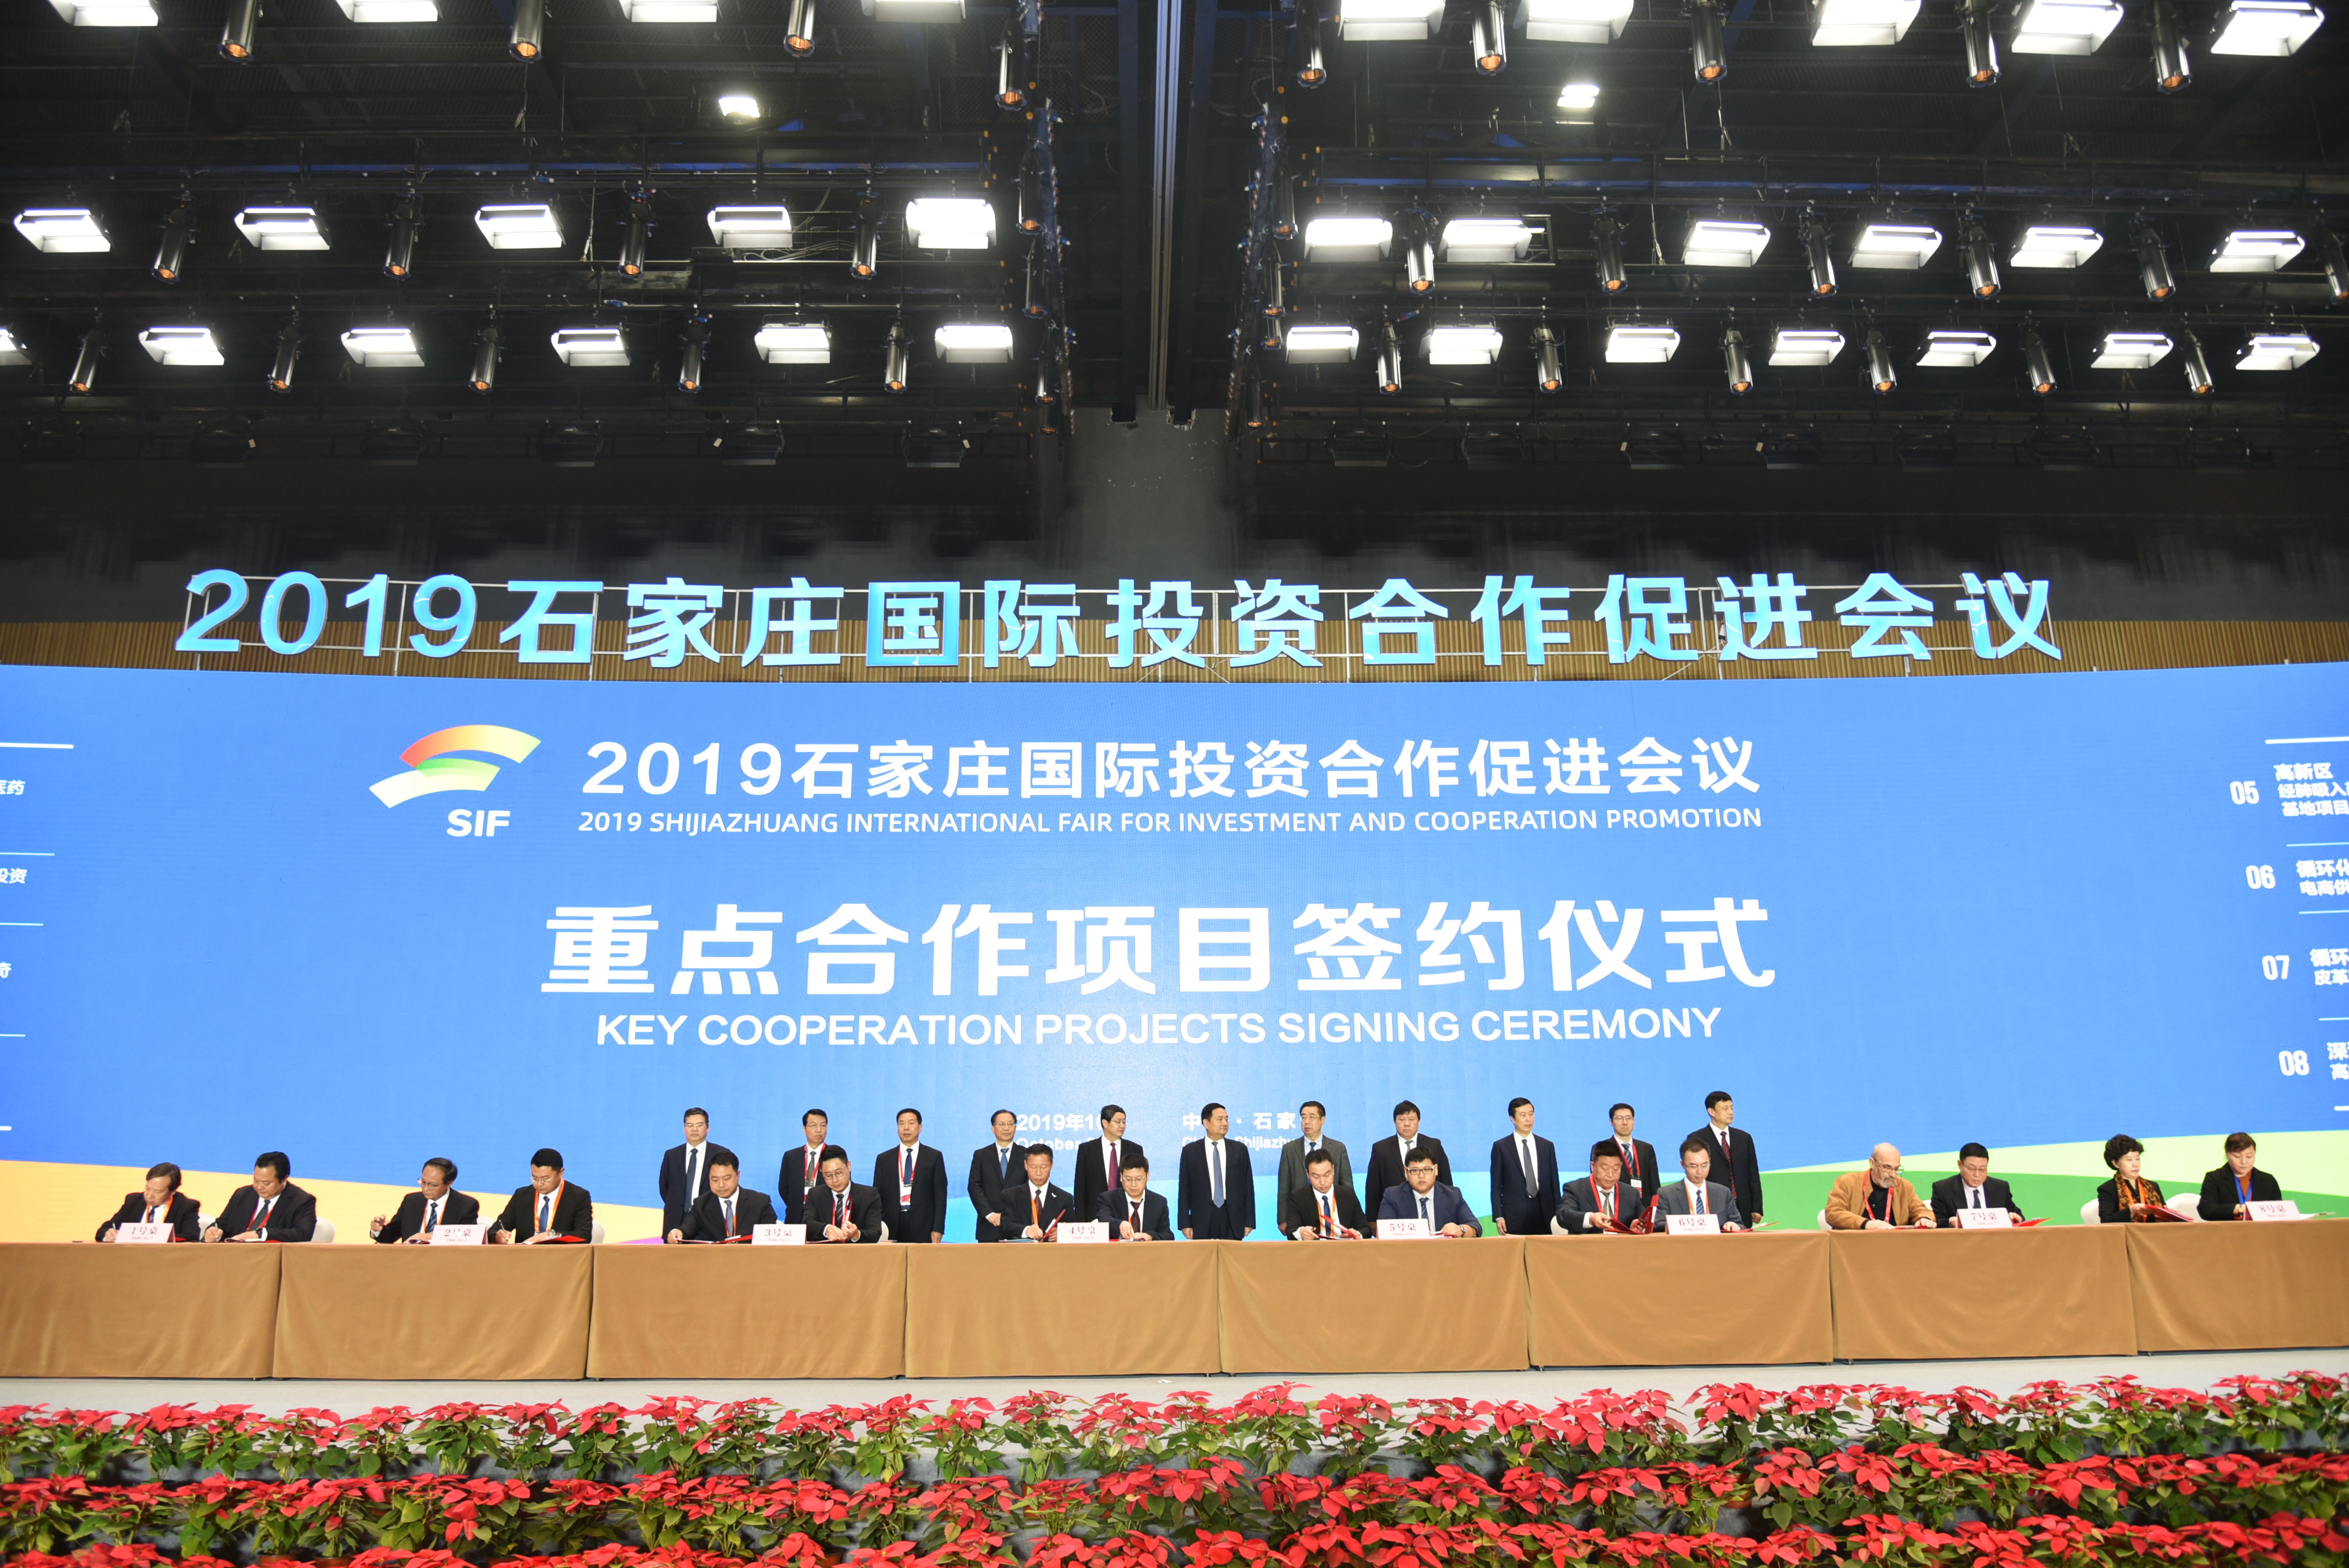 2019年10月22日-中国石家庄国际投资合作促进会